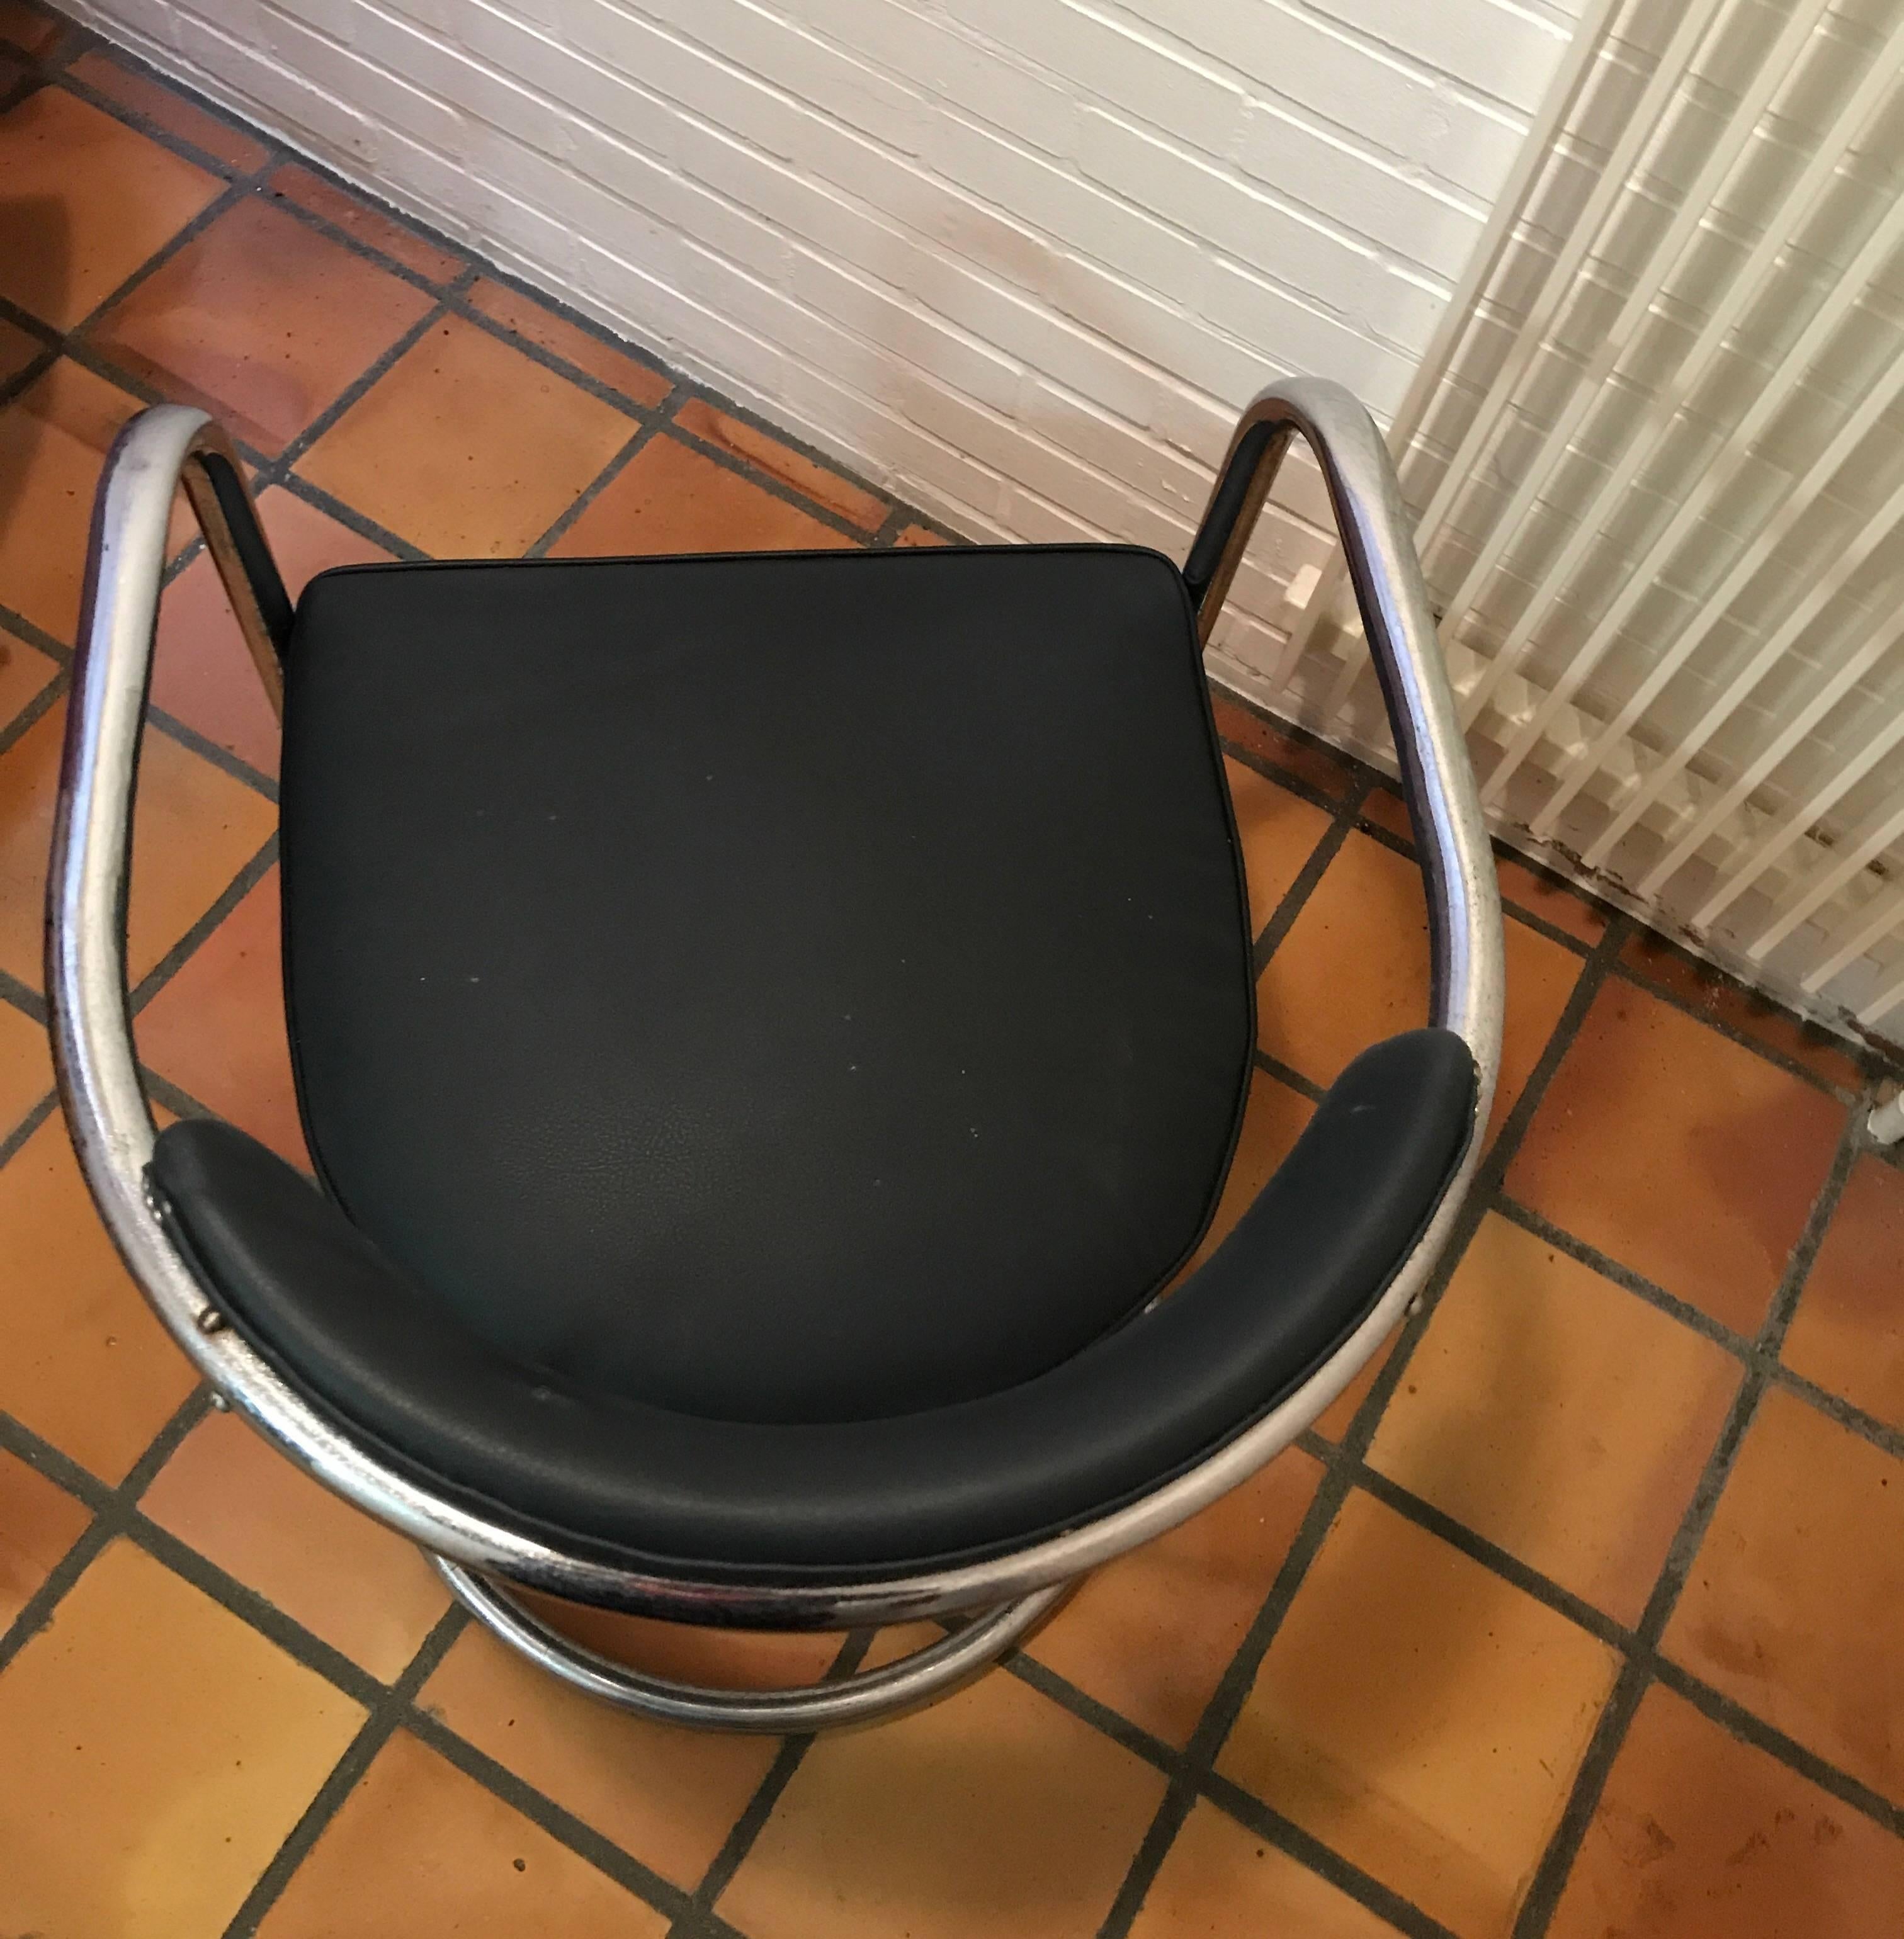 Stuhl um 1930, hergestellt in Lizenz von Thonet, entworfen von Hans und Wassily Luckardt und hergestellt von Mucke-Melder in Freystadt, Deutschland
Nr. 33 des Katalogs.